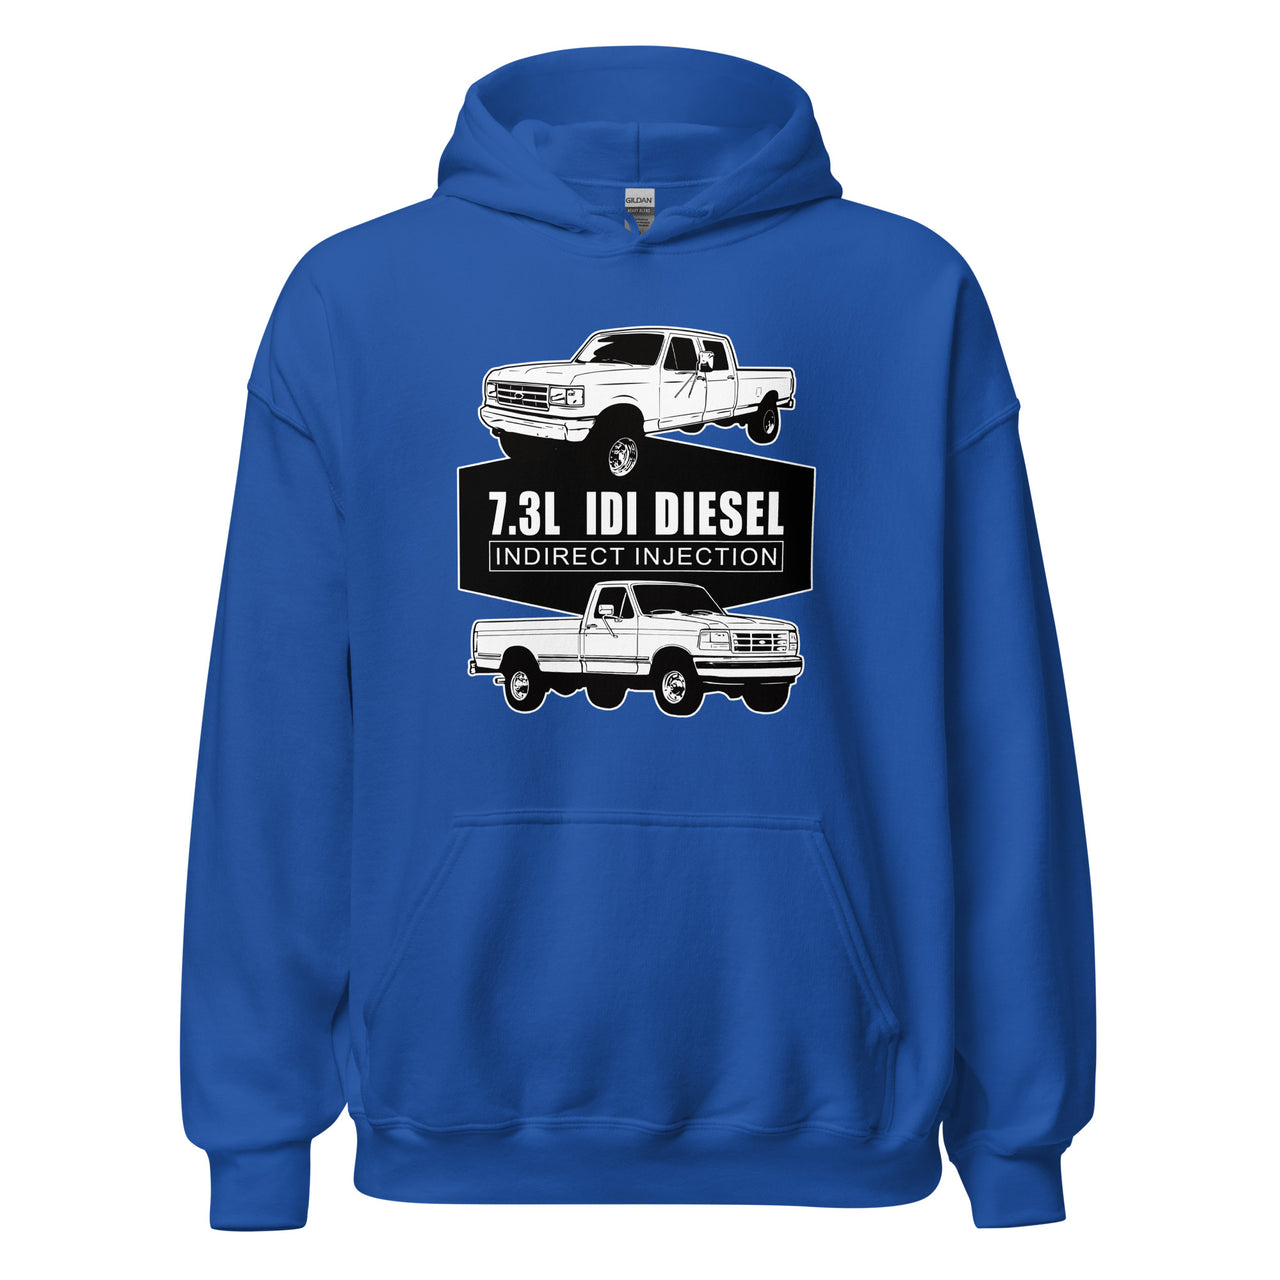 73 idi diesel truck hoodie in blue